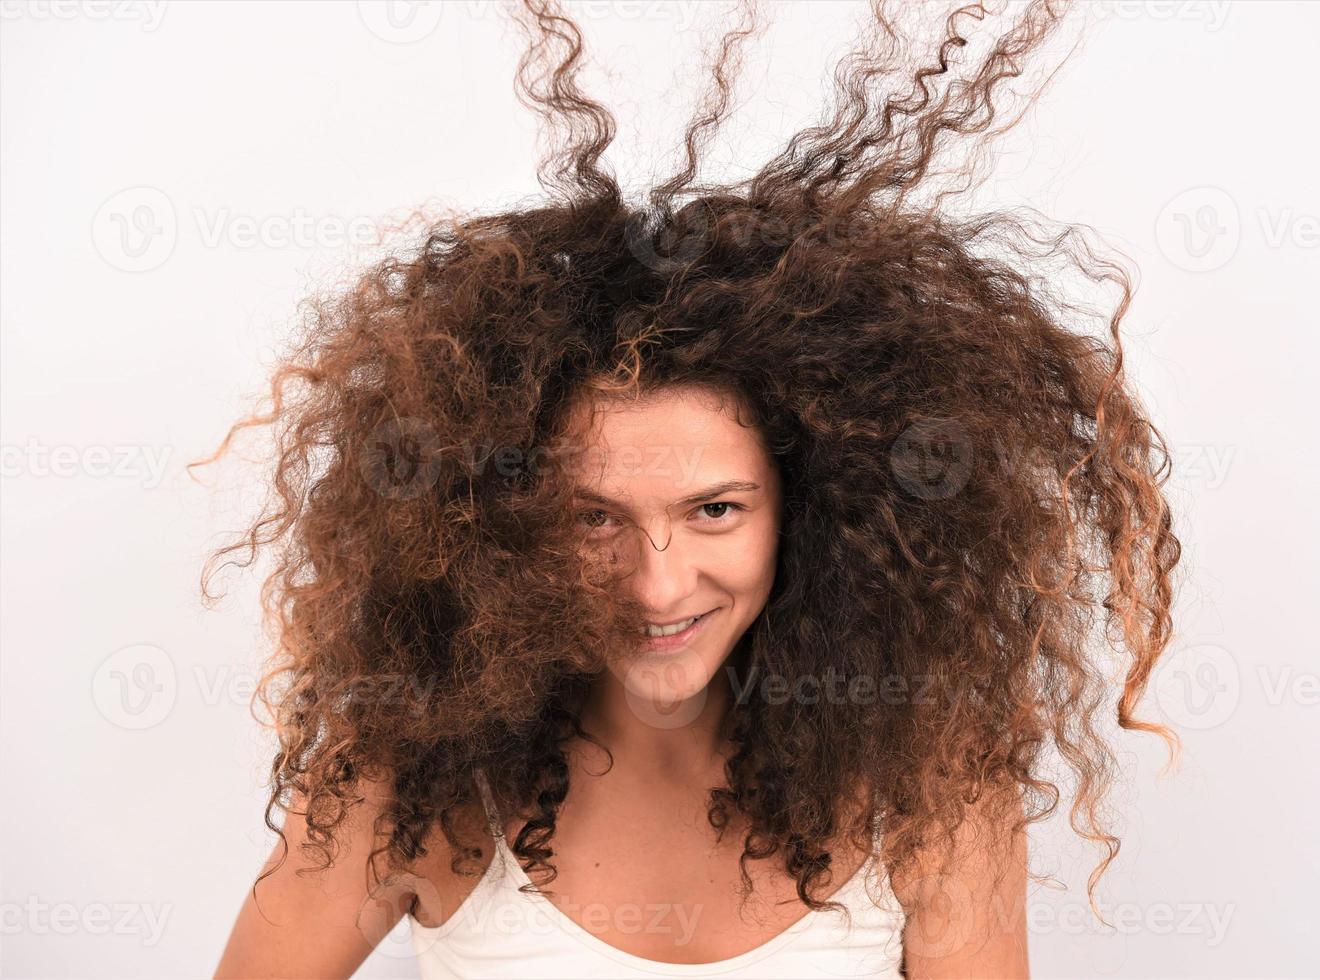 garota bonita, atraente, bem cuidada, alegre, alegre, de cabelos ondulados, usando secador elétrico foto